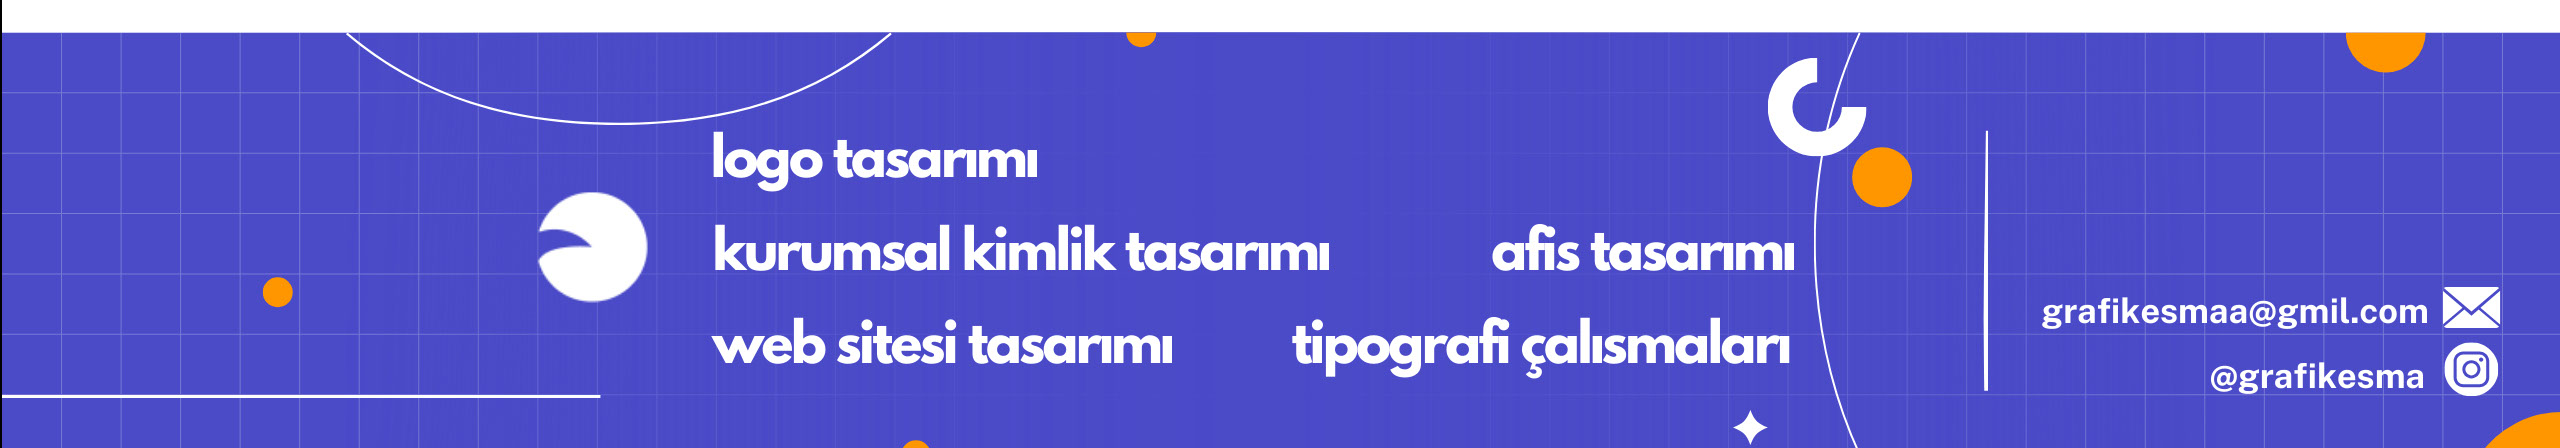 Esma Hatun YÜZÜGÜLDÜK's profile banner